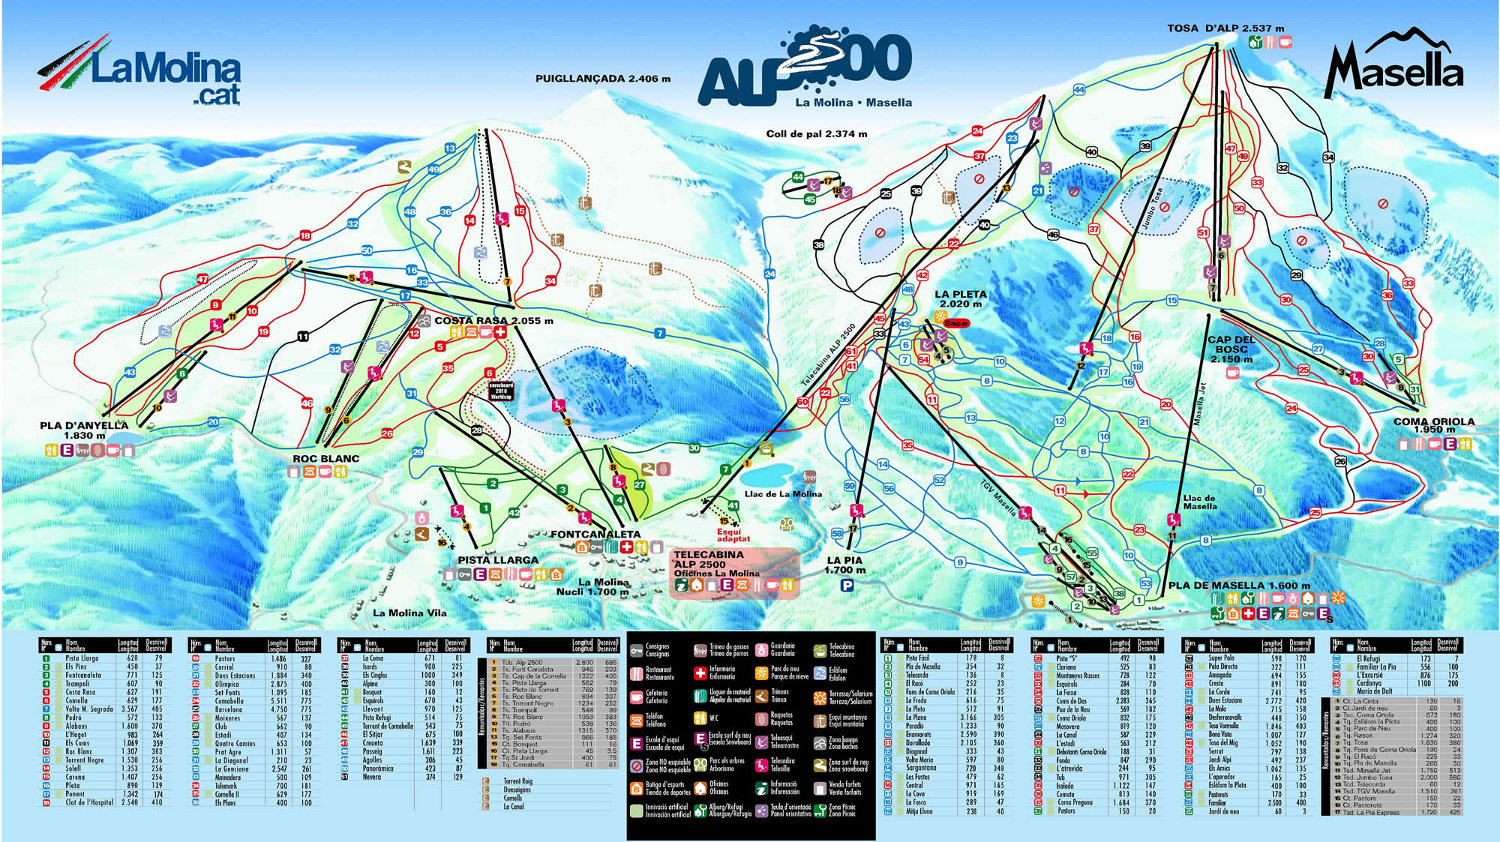 Alp 2500 se consolida como el dominio mas grande de España - Noticias -  Nevasport.com